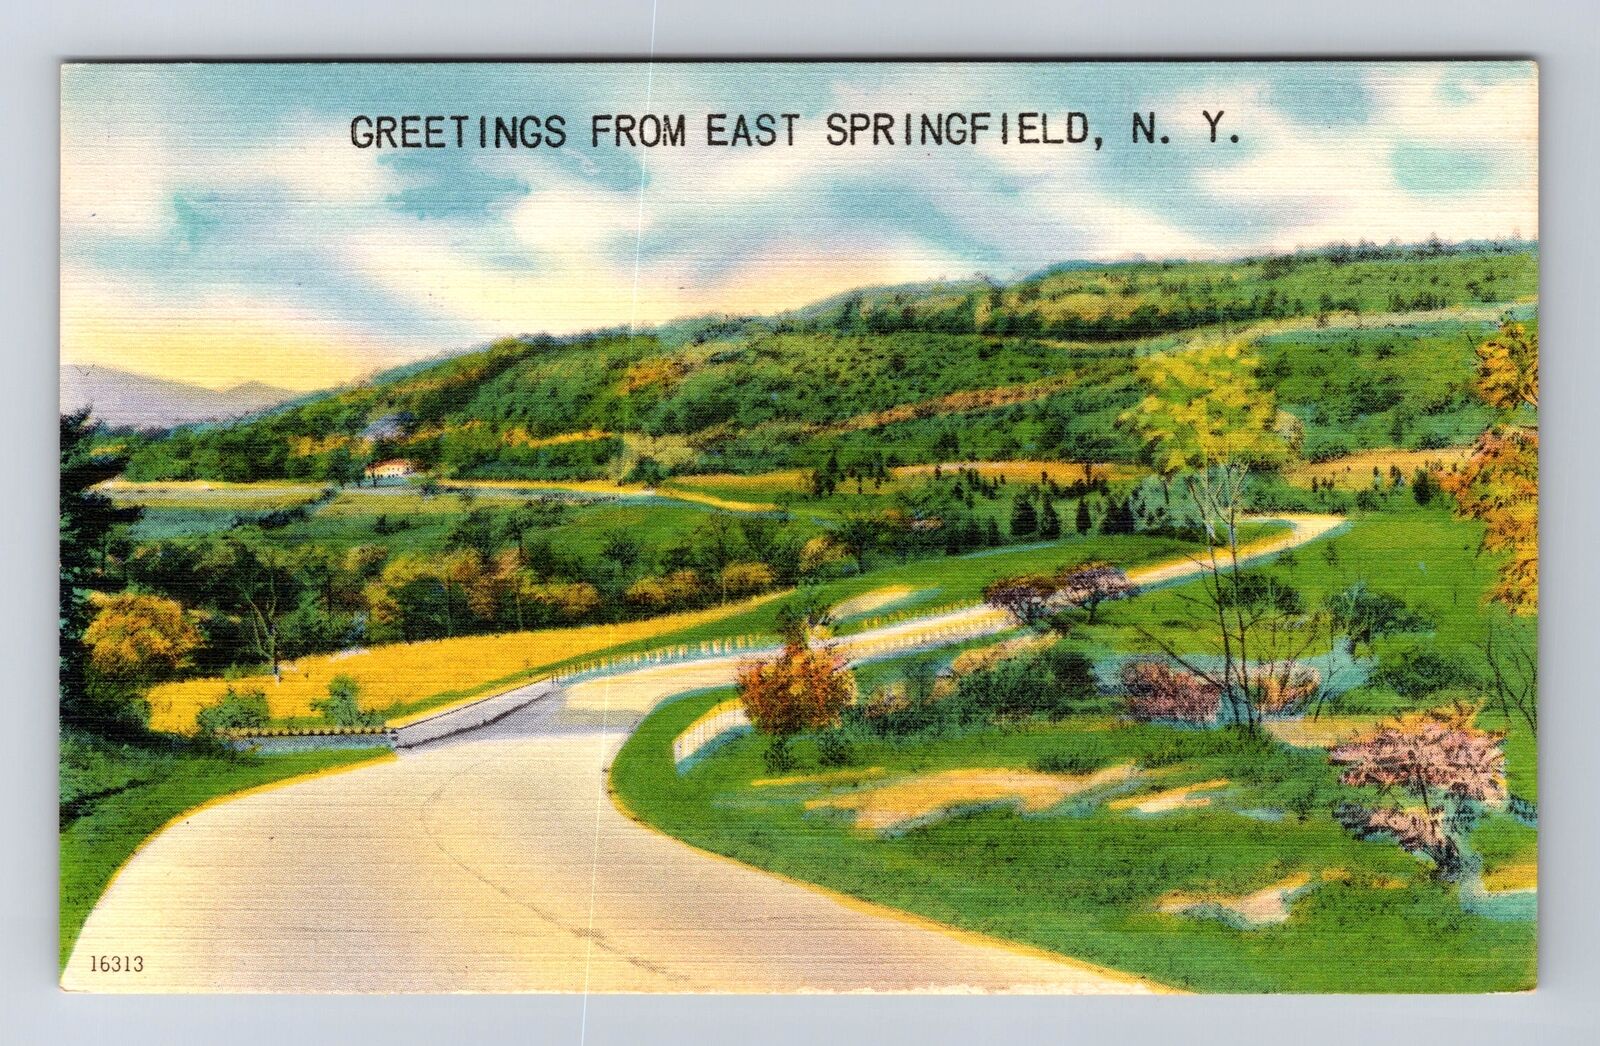 East Springfield NY-New York, General Greetings Road Street, Vintage Postcard